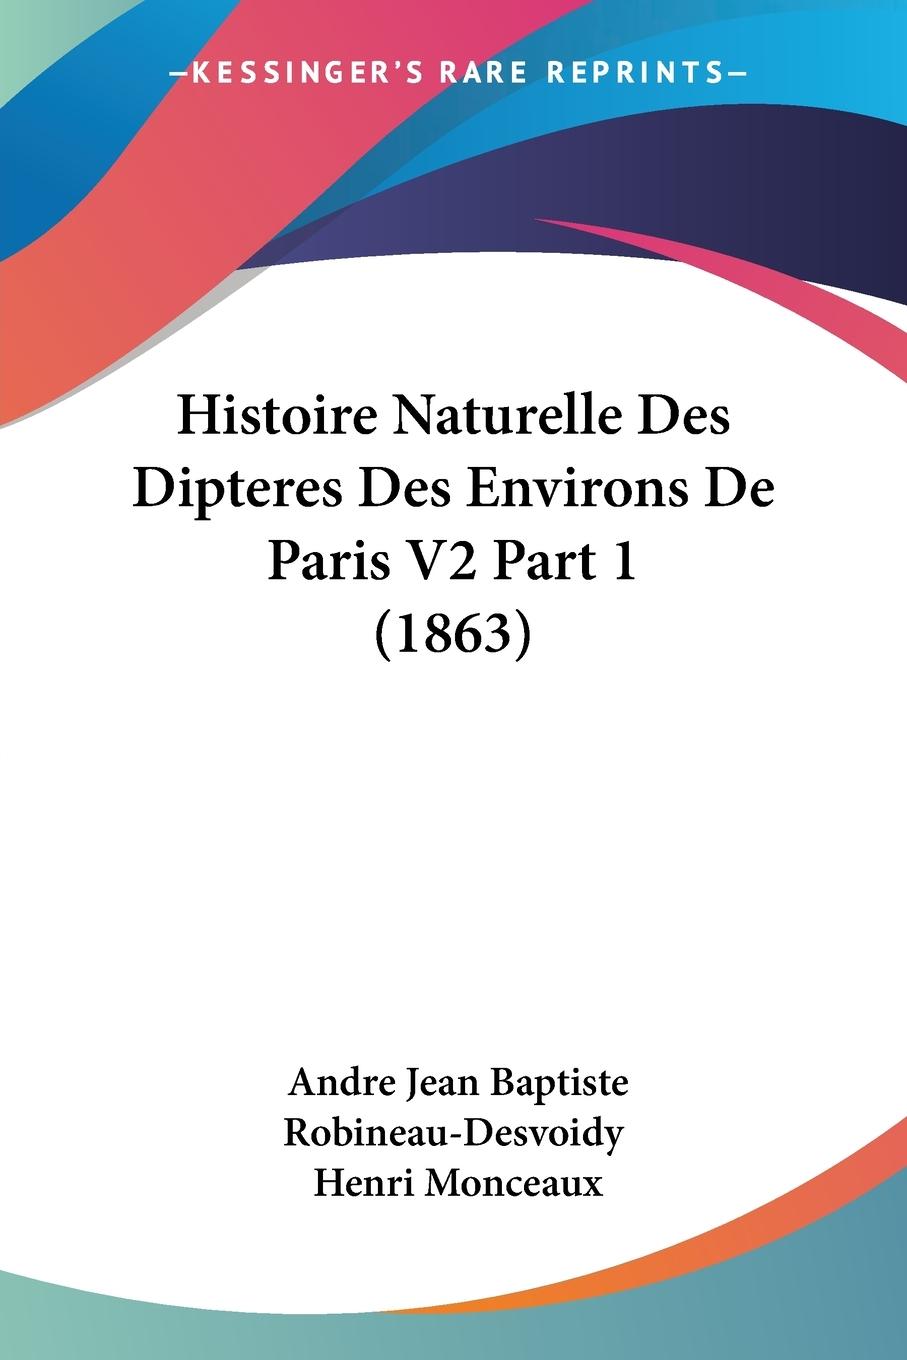 Histoire Naturelle Des Dipteres Des Environs De Paris V2 Part 1 (1863) - Robineau-Desvoidy, Andre Jean Baptiste Monceaux, Henri